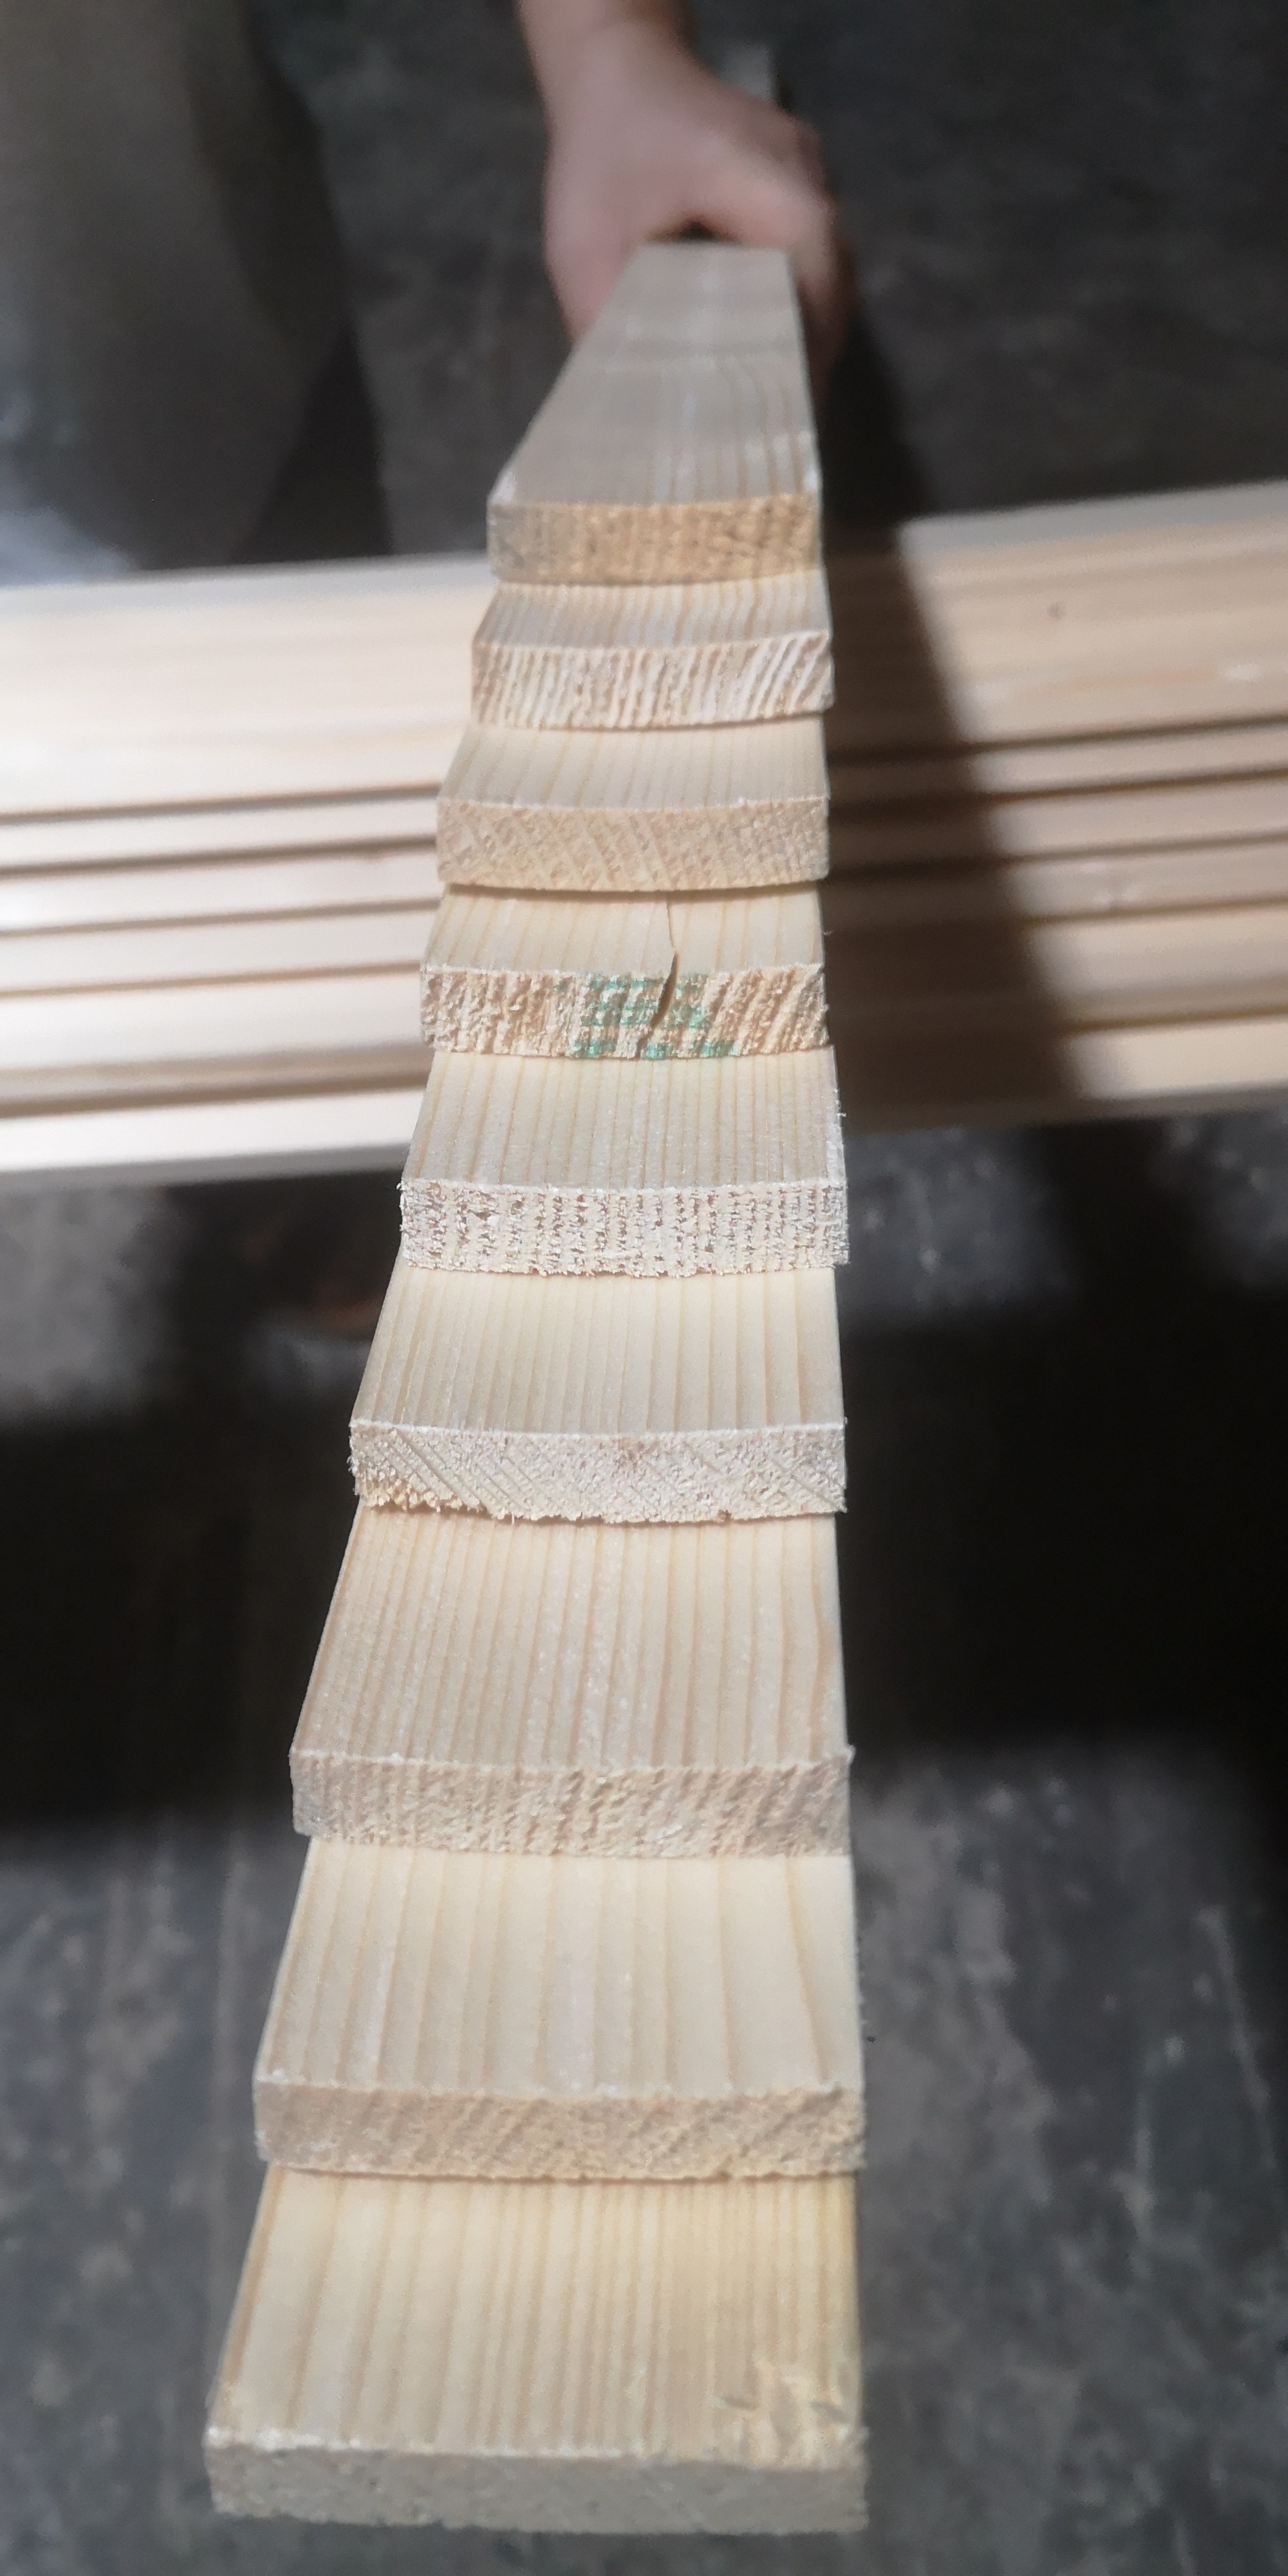 圆柱清水木纹板(图7)